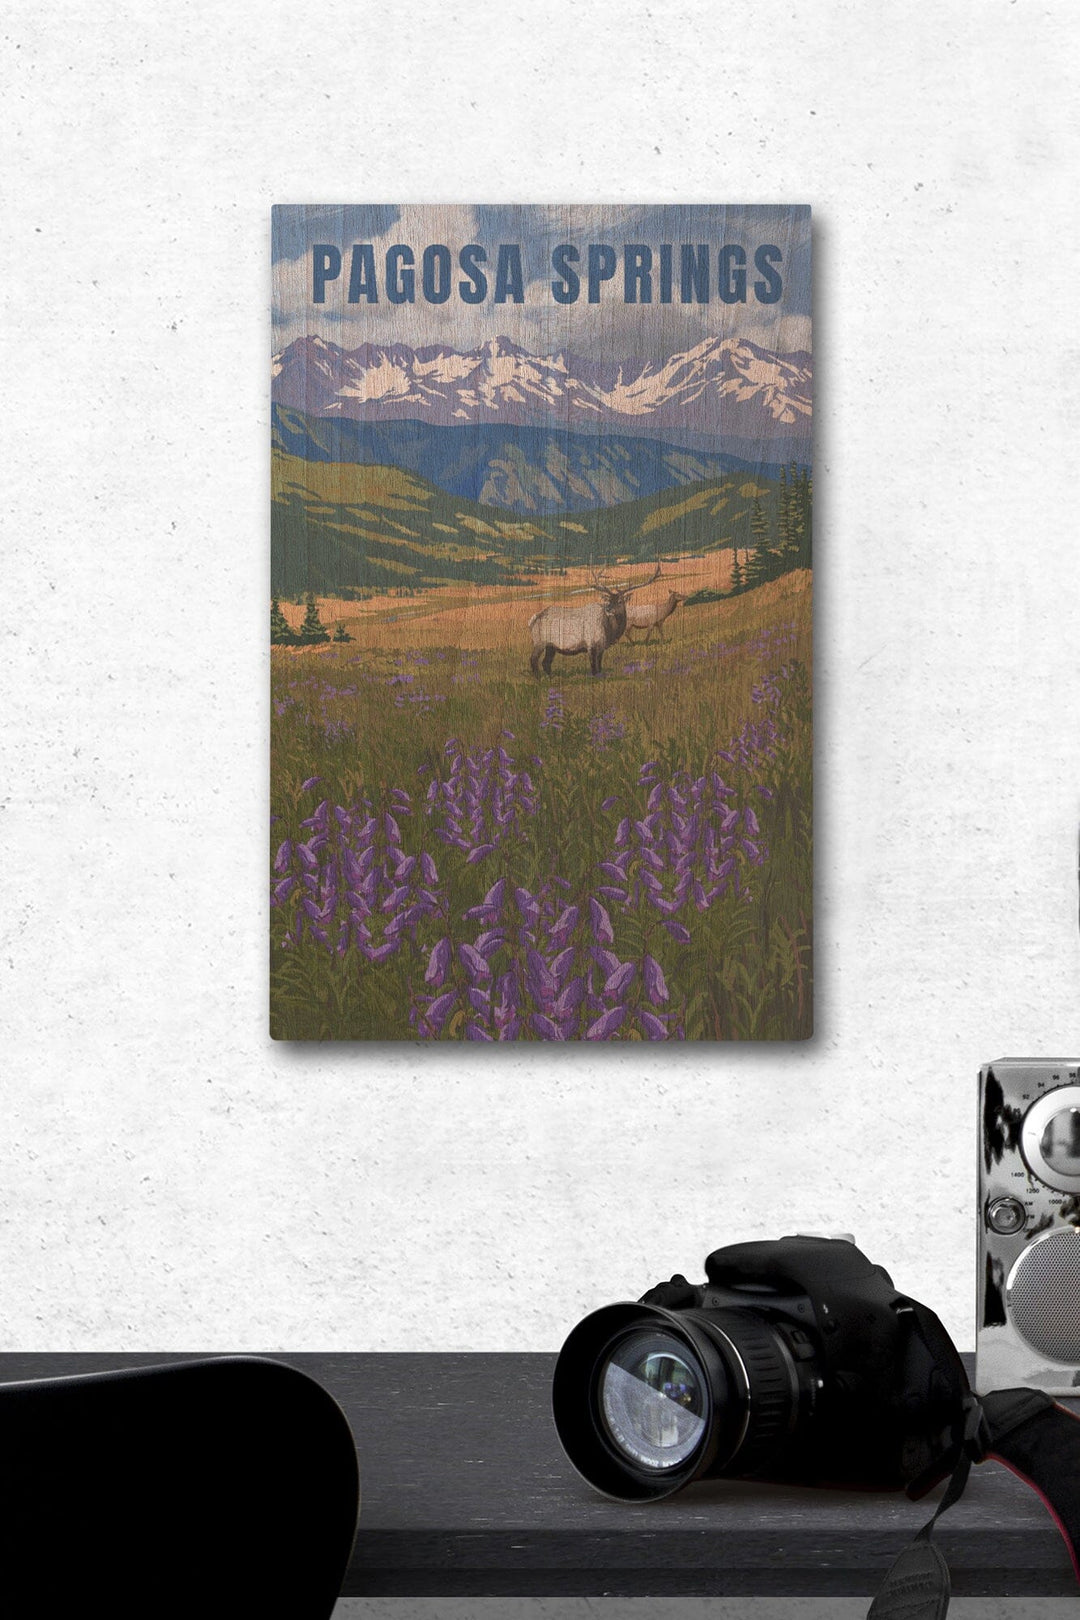 Pagosa Springs, Colorado, Elk & Flowers, Lantern Press Artwork, Wood Signs and Postcards Wood Lantern Press 12 x 18 Wood Gallery Print 